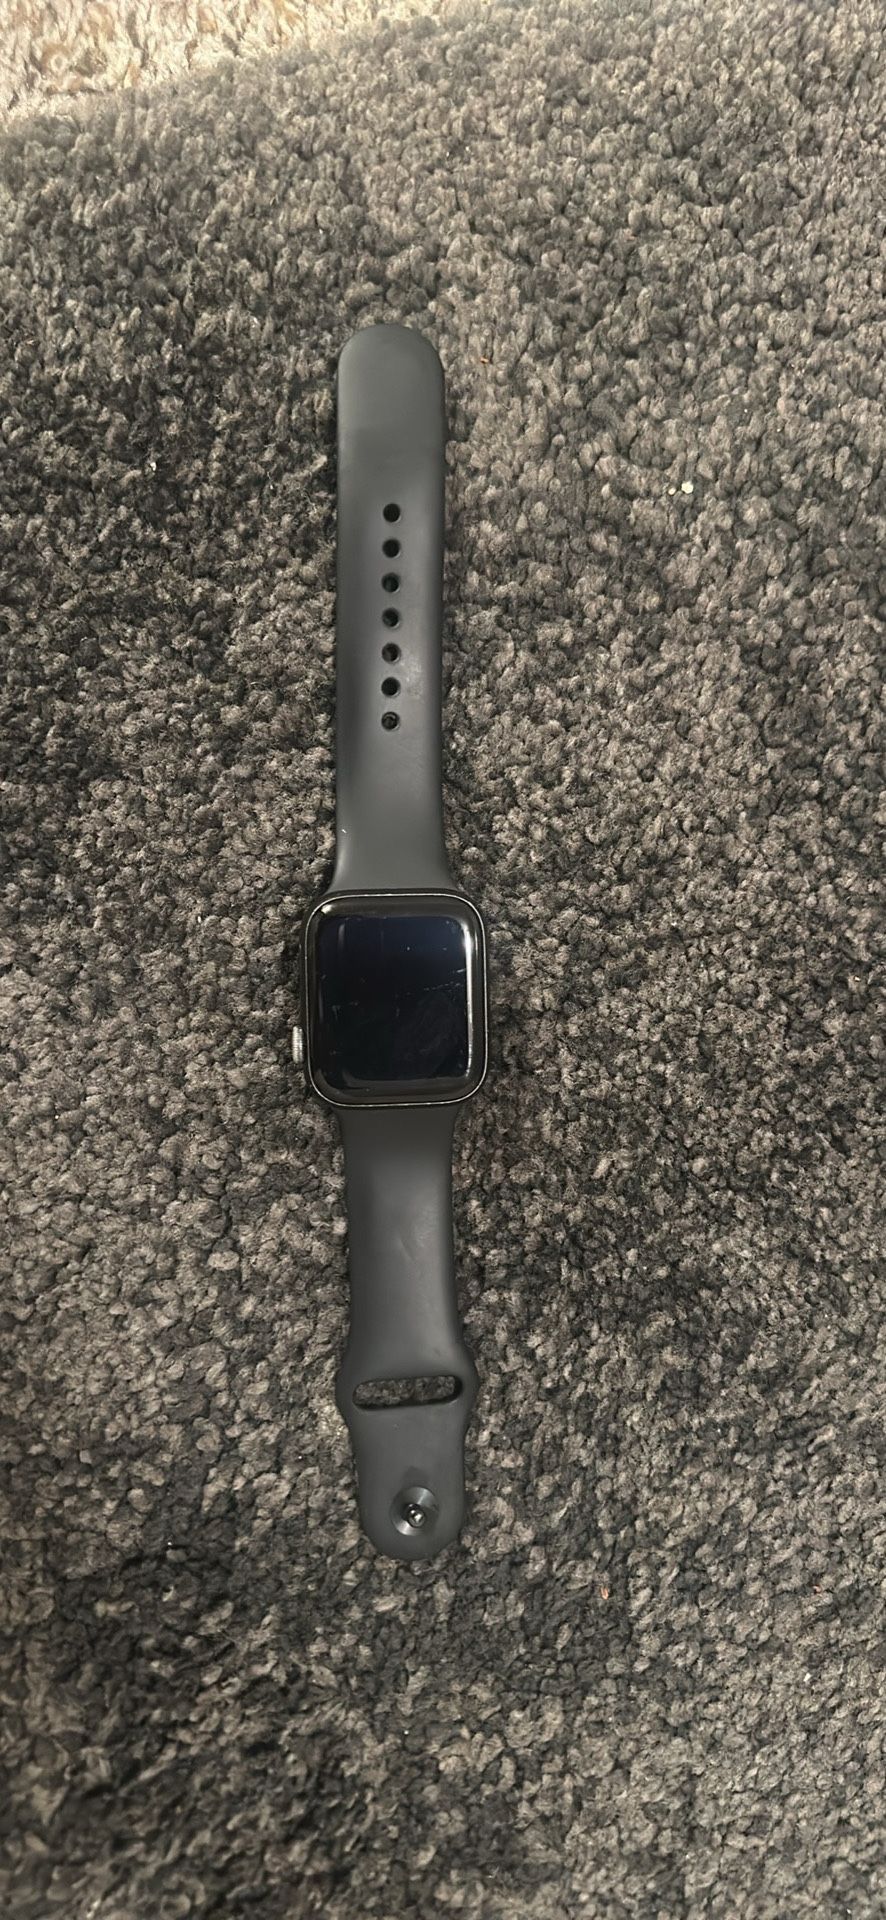 Apple Watch SE 2 